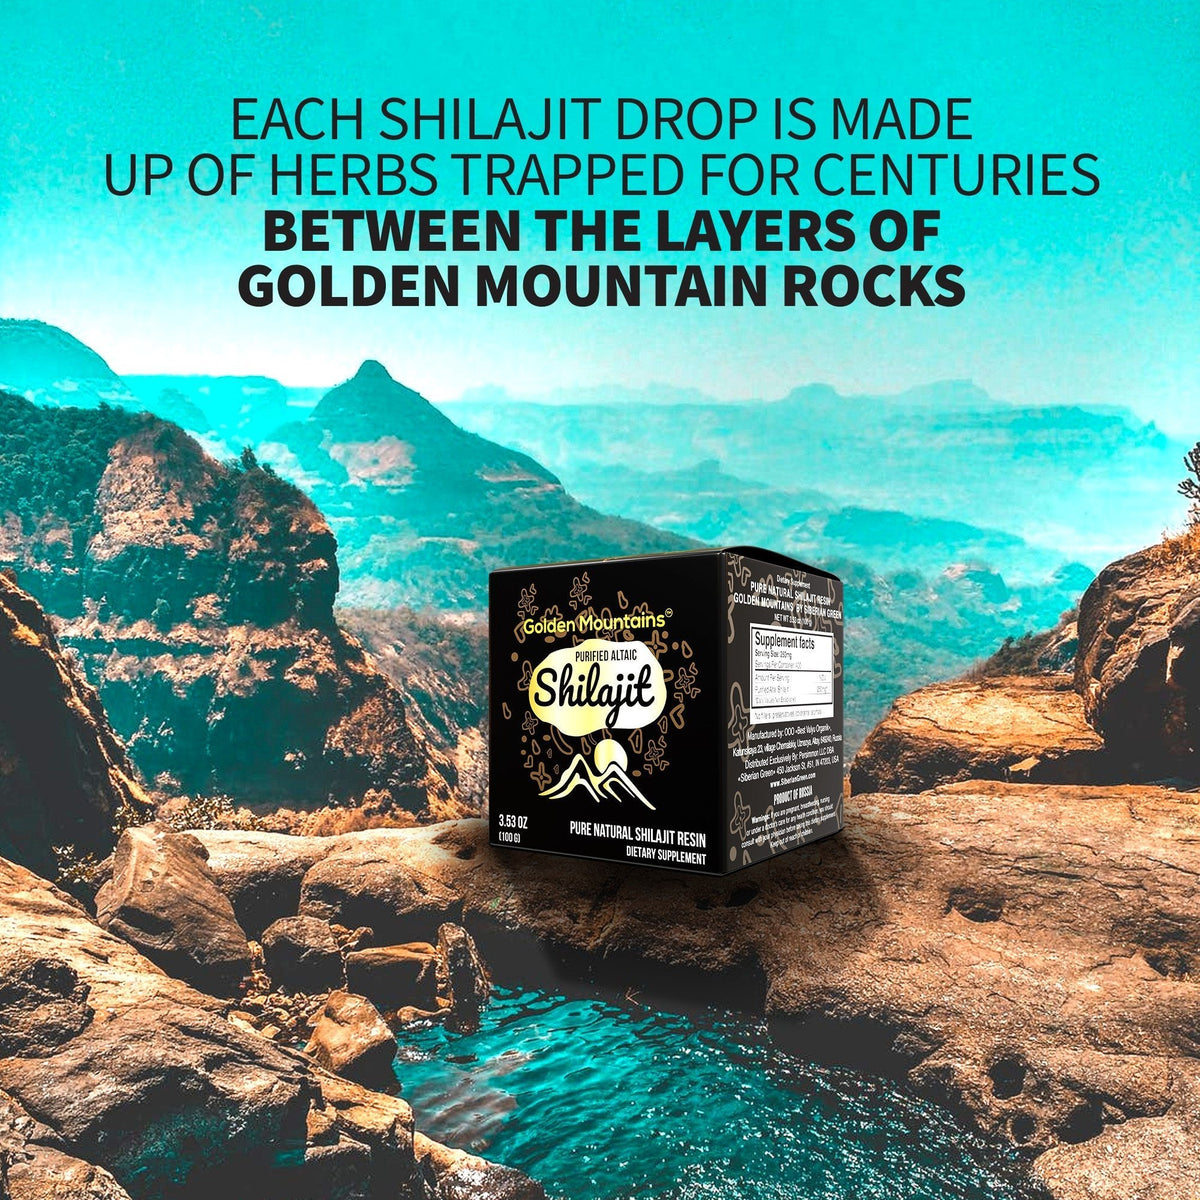 Golden Mountains Shilajit Resin Premium Pure Authentic Siberian Altai 100g - Cuillère à mesurer - Certificat de qualité exclusif